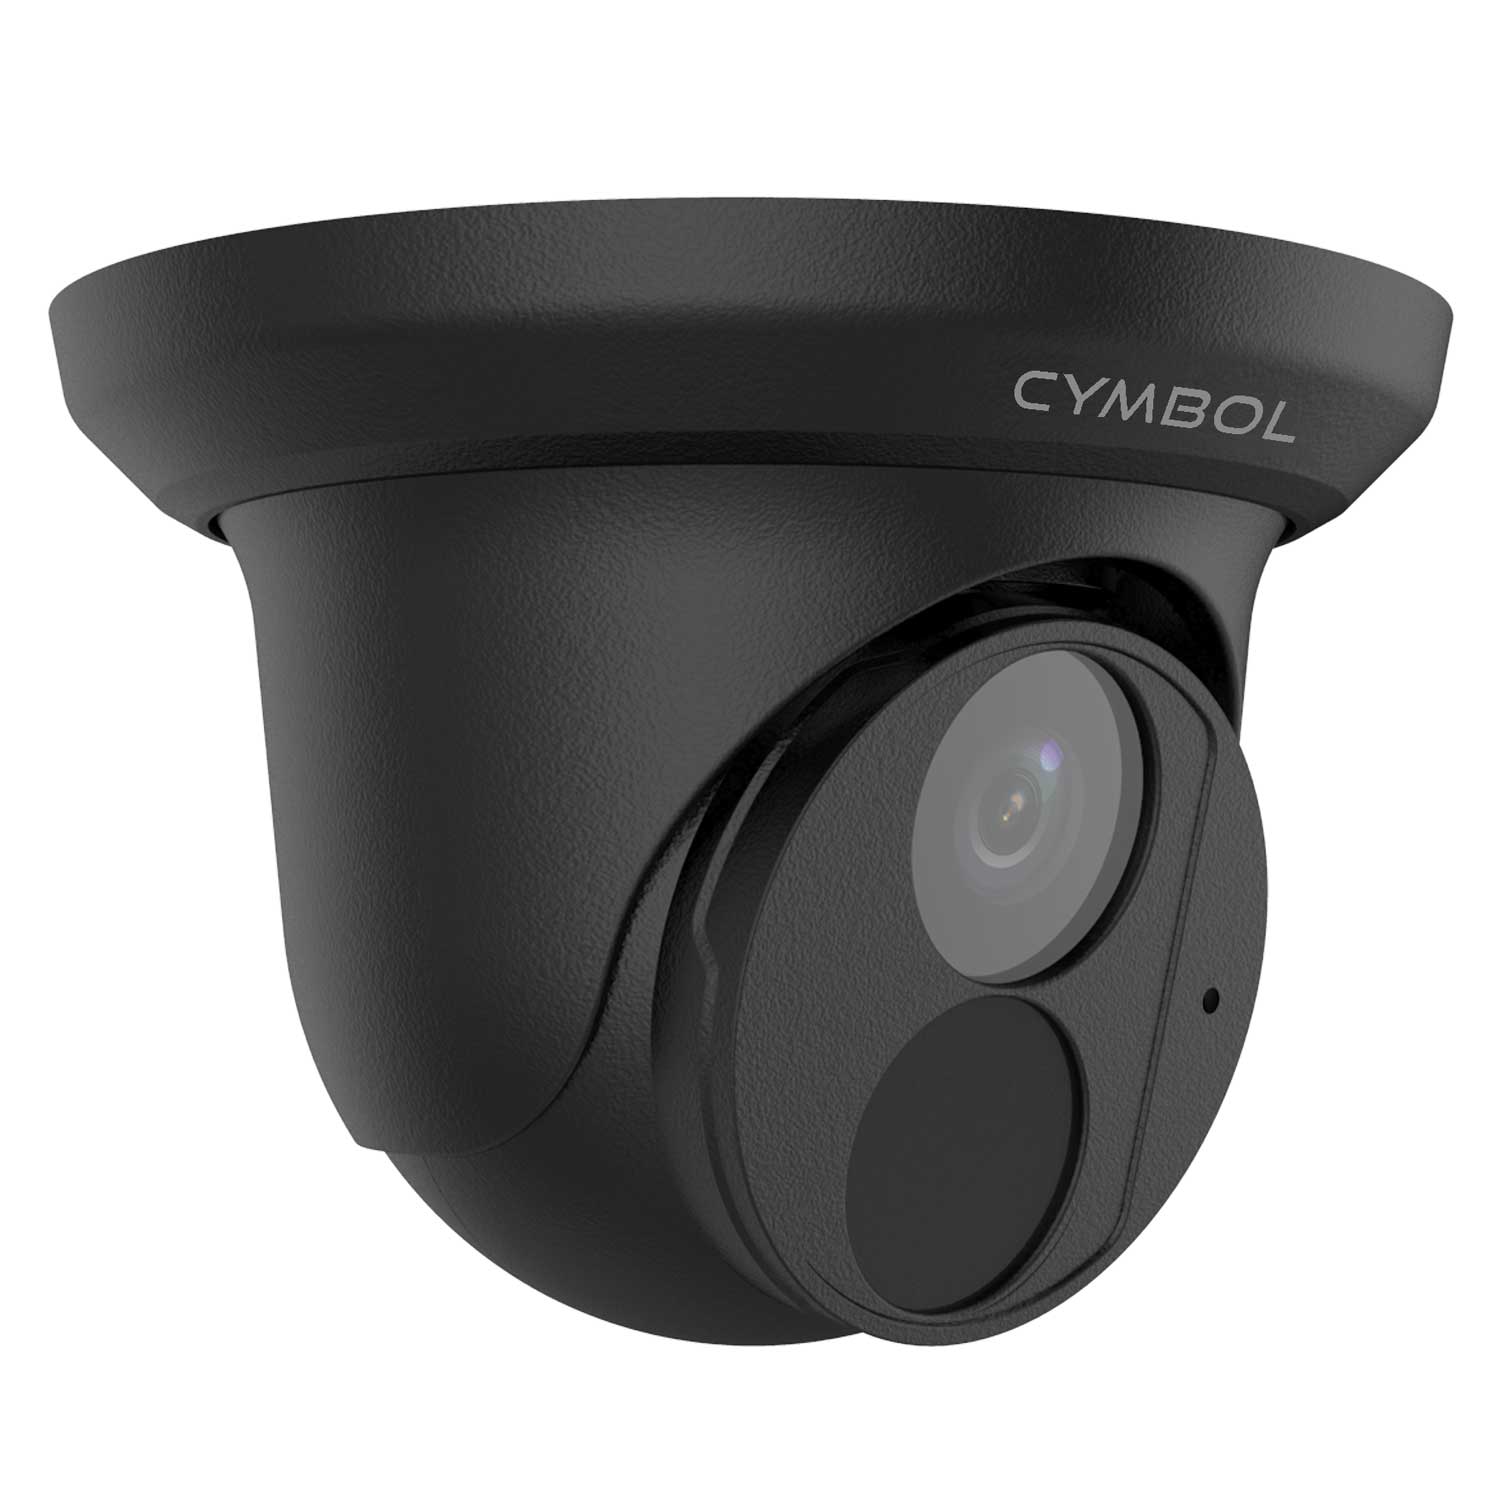 Cymbol 8MP 4K Starlight IR Turret Camera 2.8mm - Black